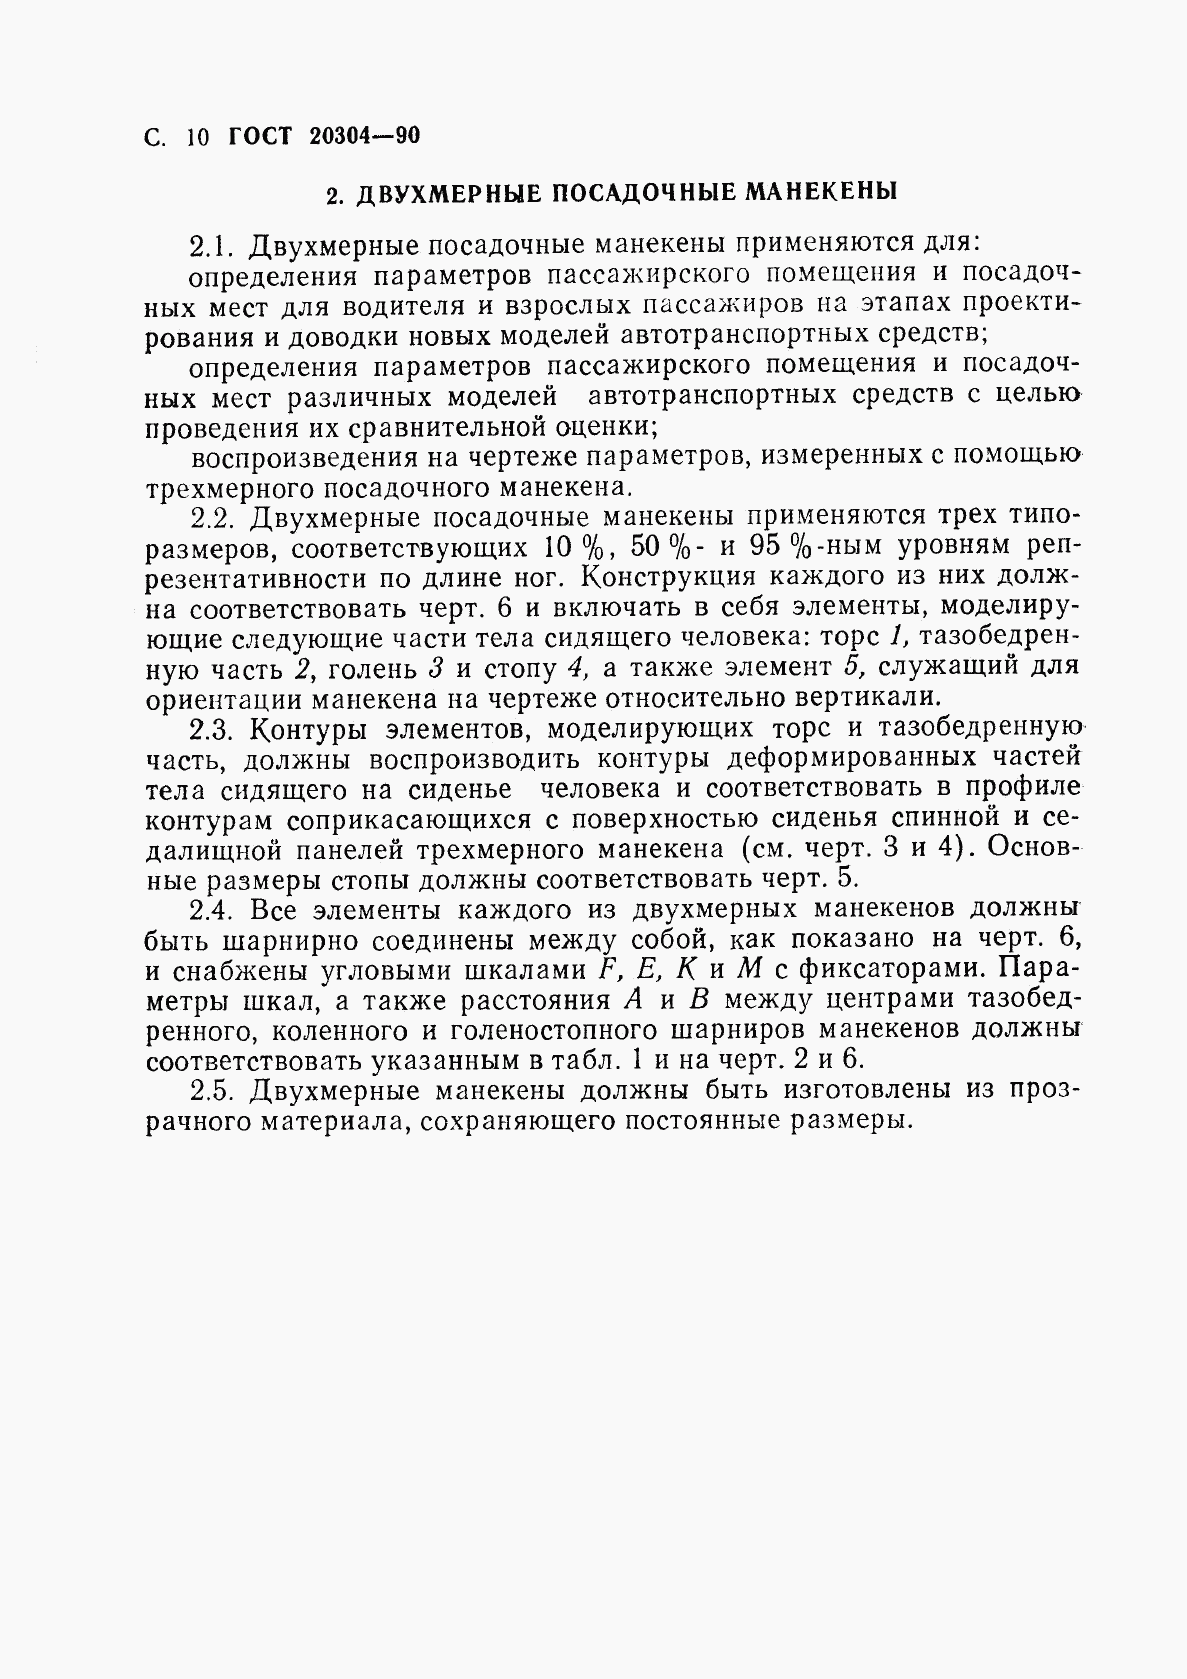 ГОСТ 20304-90, страница 11